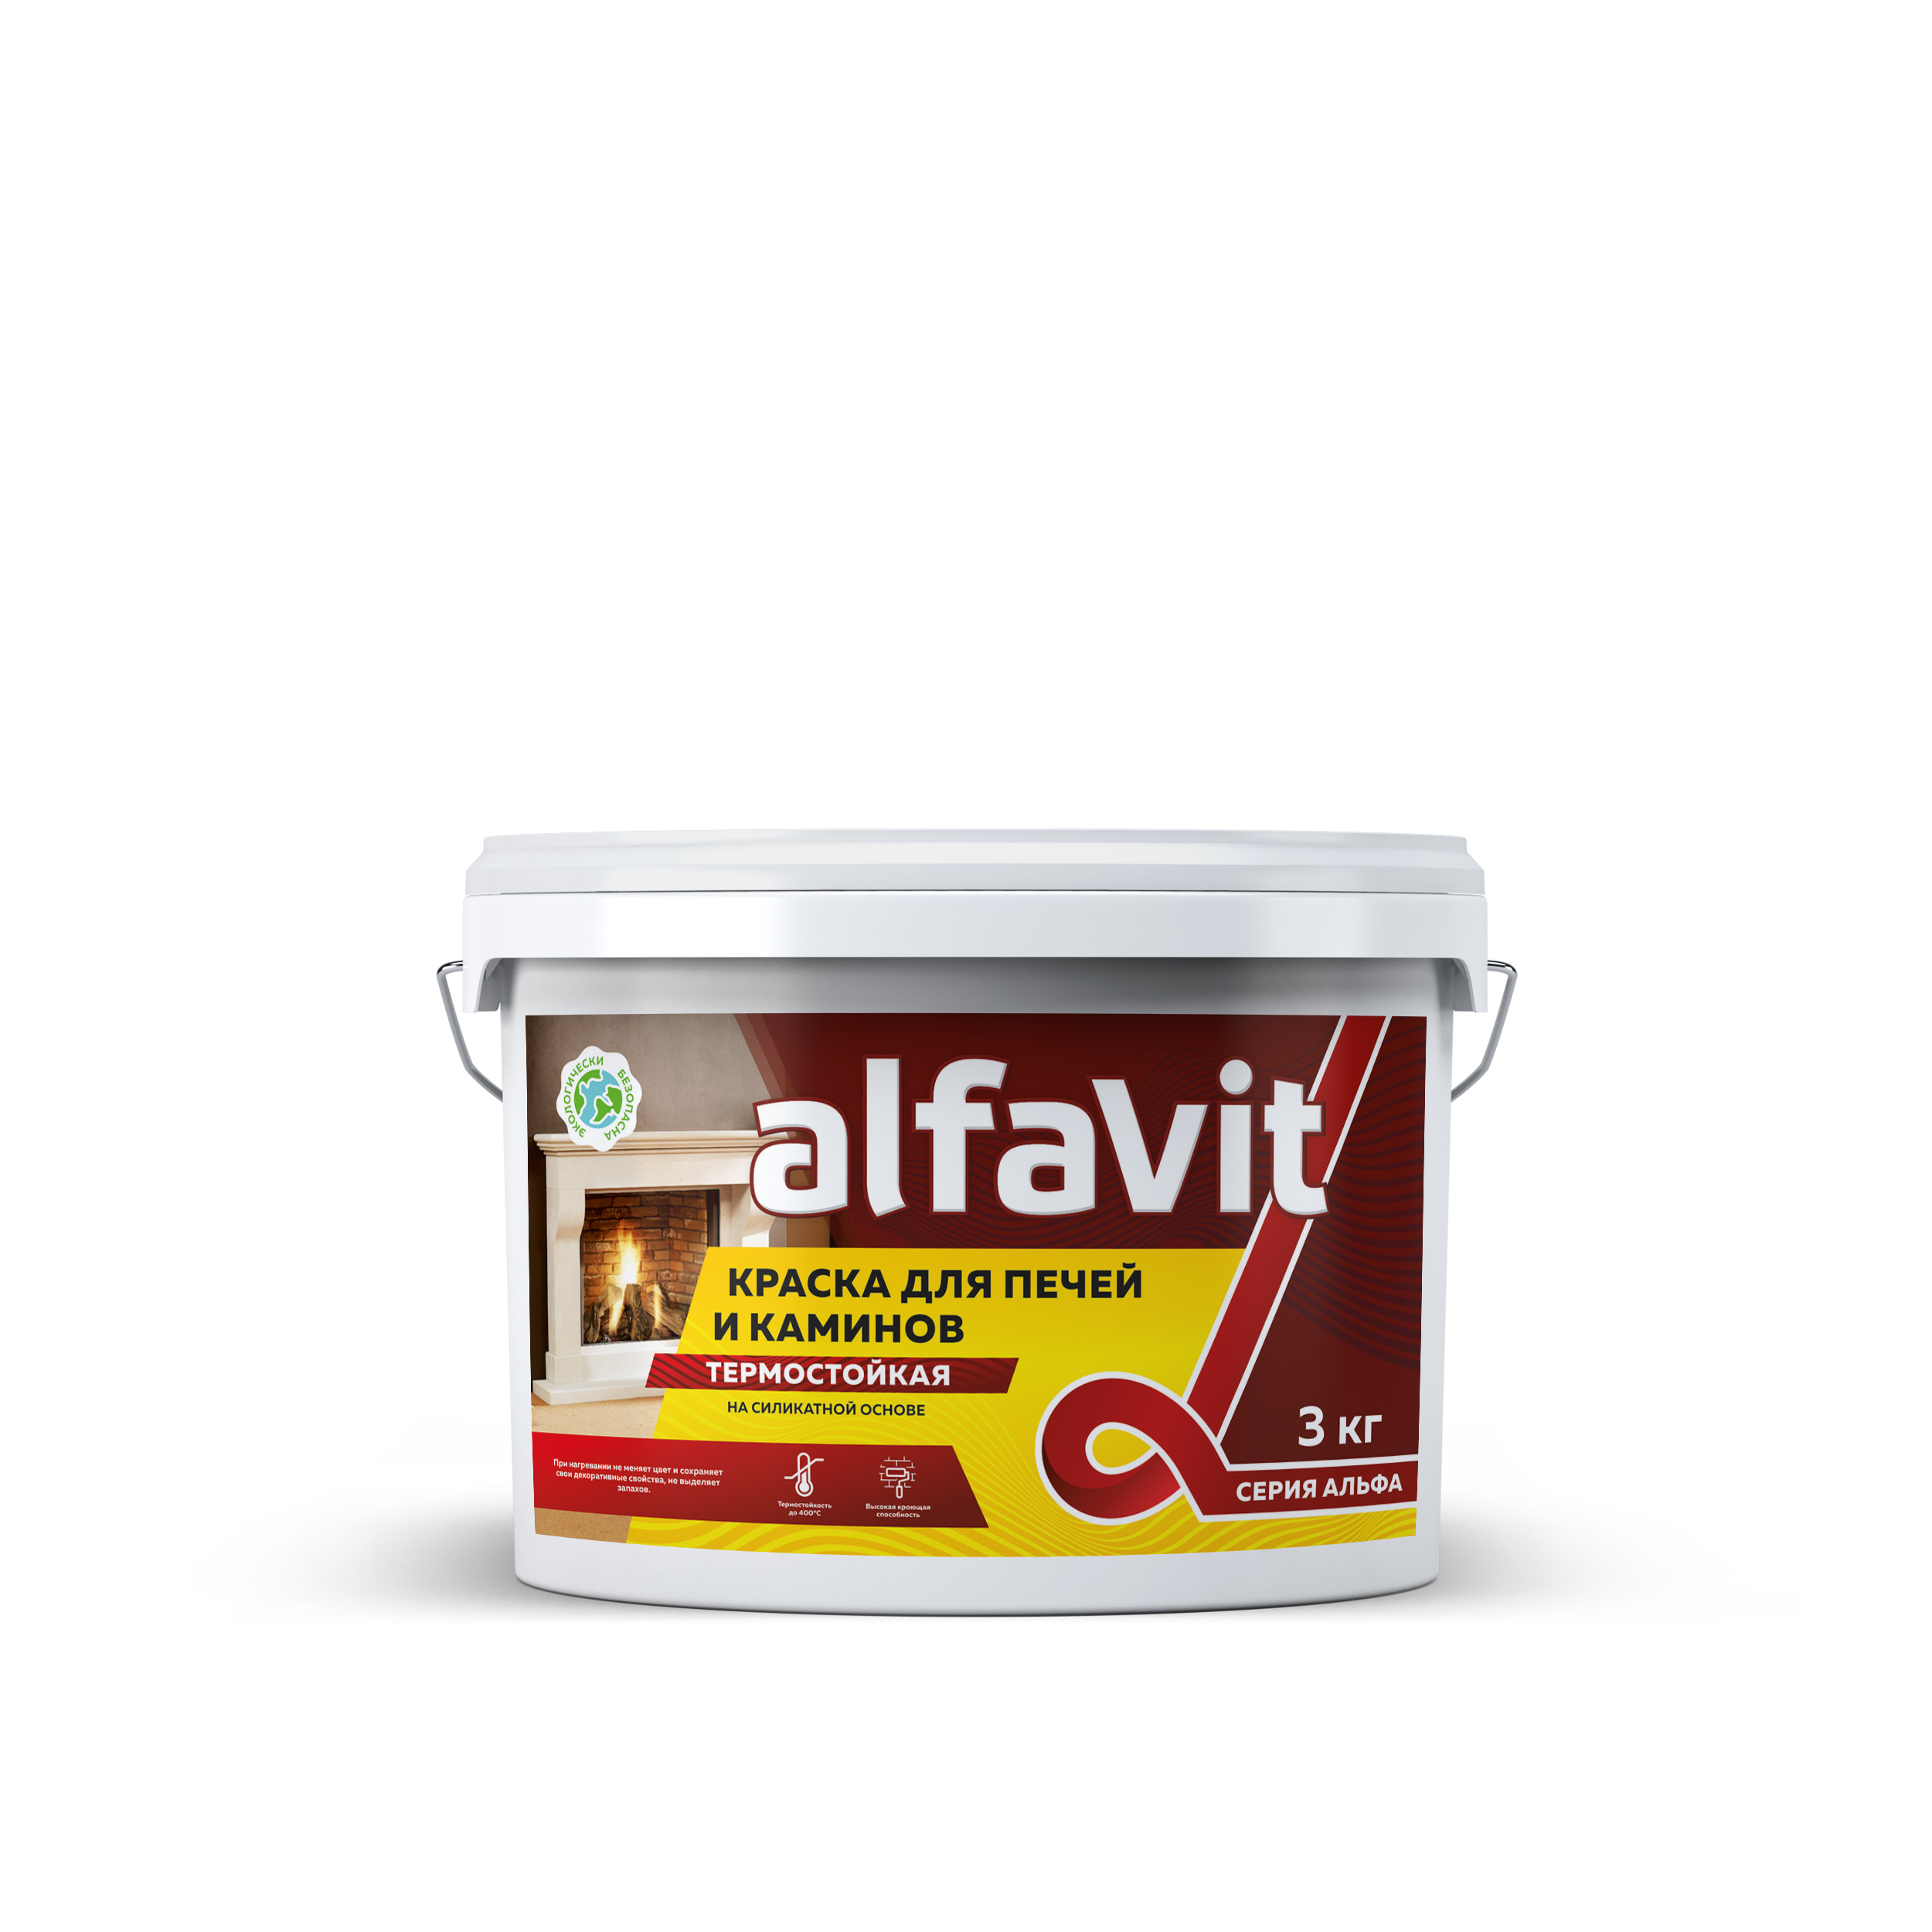 Краска для печей и каминов термостойкая Alfavit серия Альфа, красно-коричневая, 1,3 кг воднодисперсионная термостойкая краска для печей и каминов safora